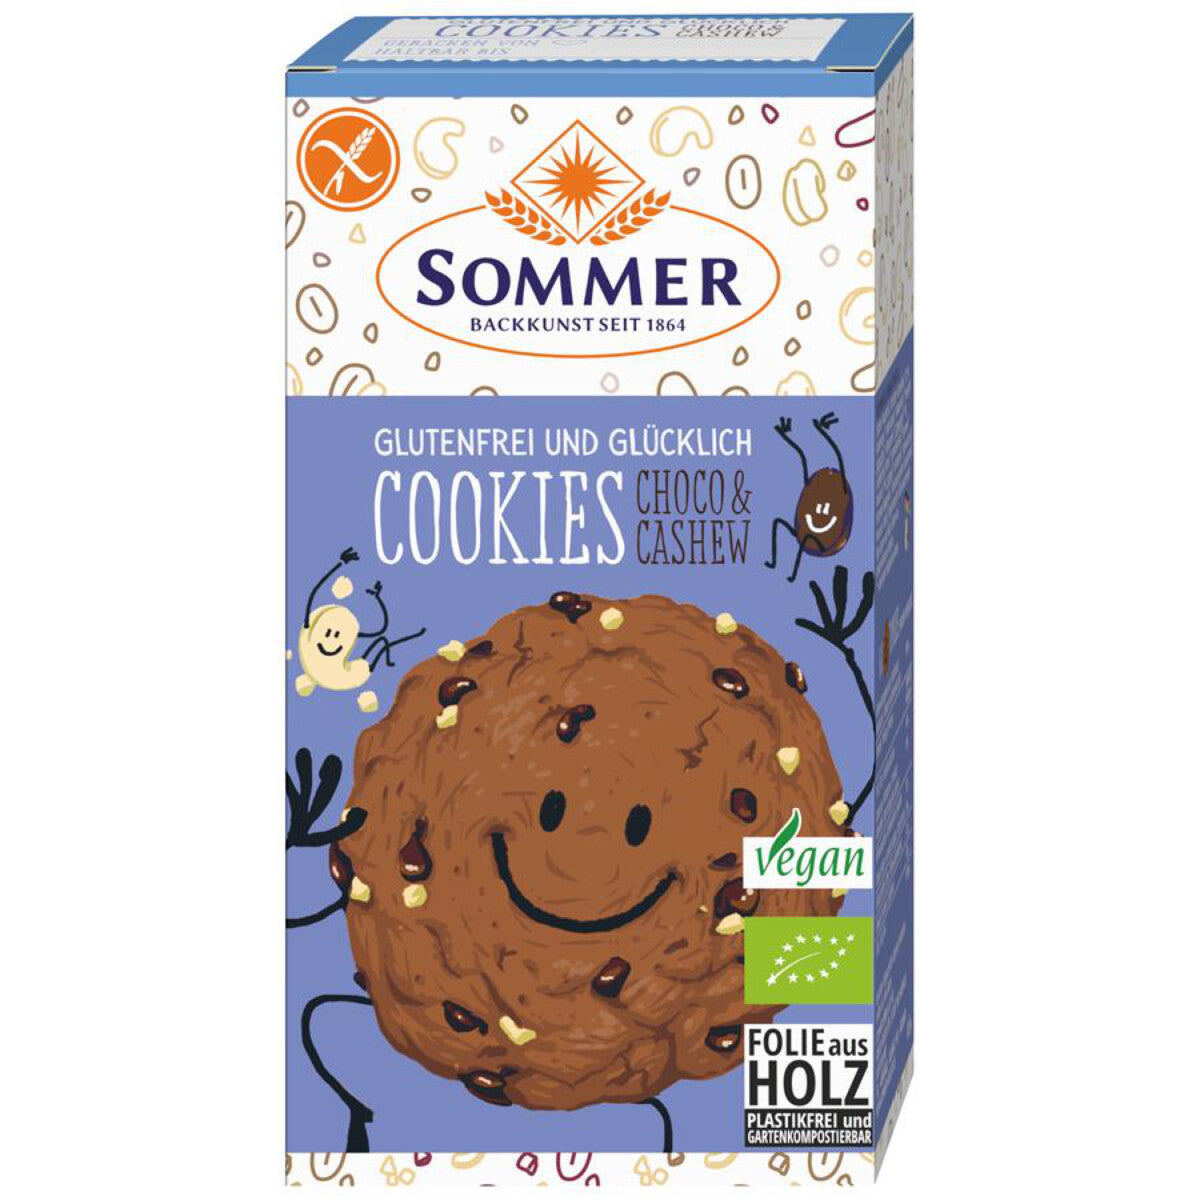 SOMMER & CO Cookies Schoko Cashew - 125 g